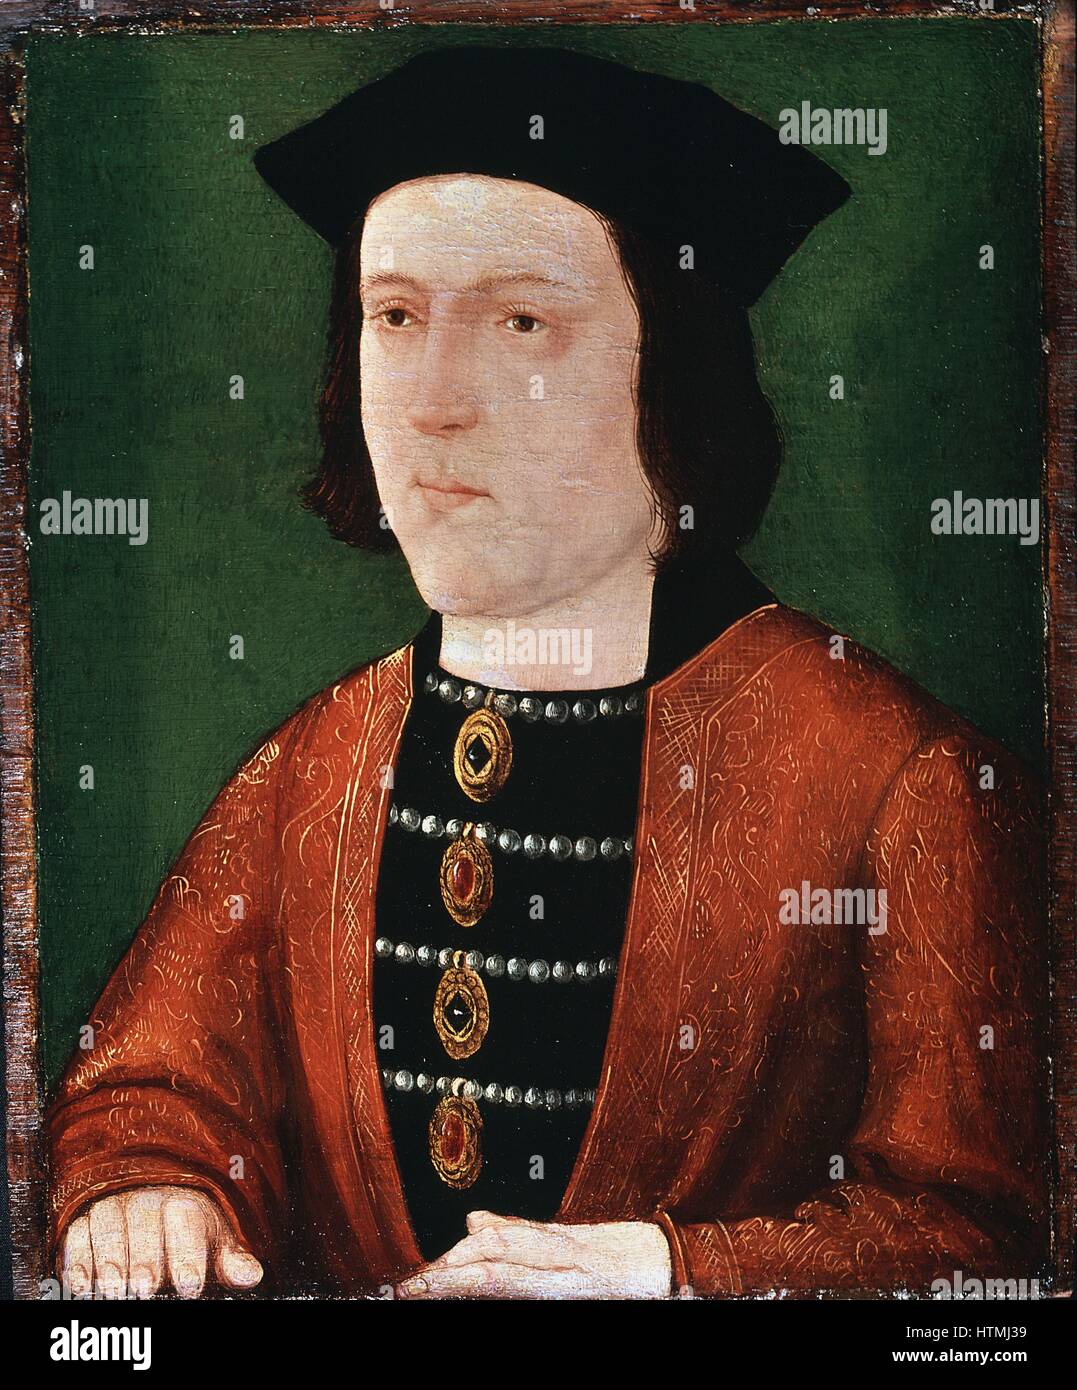 Édouard IV (1442-1483) Roi d'Angleterre (1461). Plantagenet de ligne Yorkiste. Anonyme. Peinture sur panneau. Anonyme. National Portrait Gallery, Londres. Banque D'Images